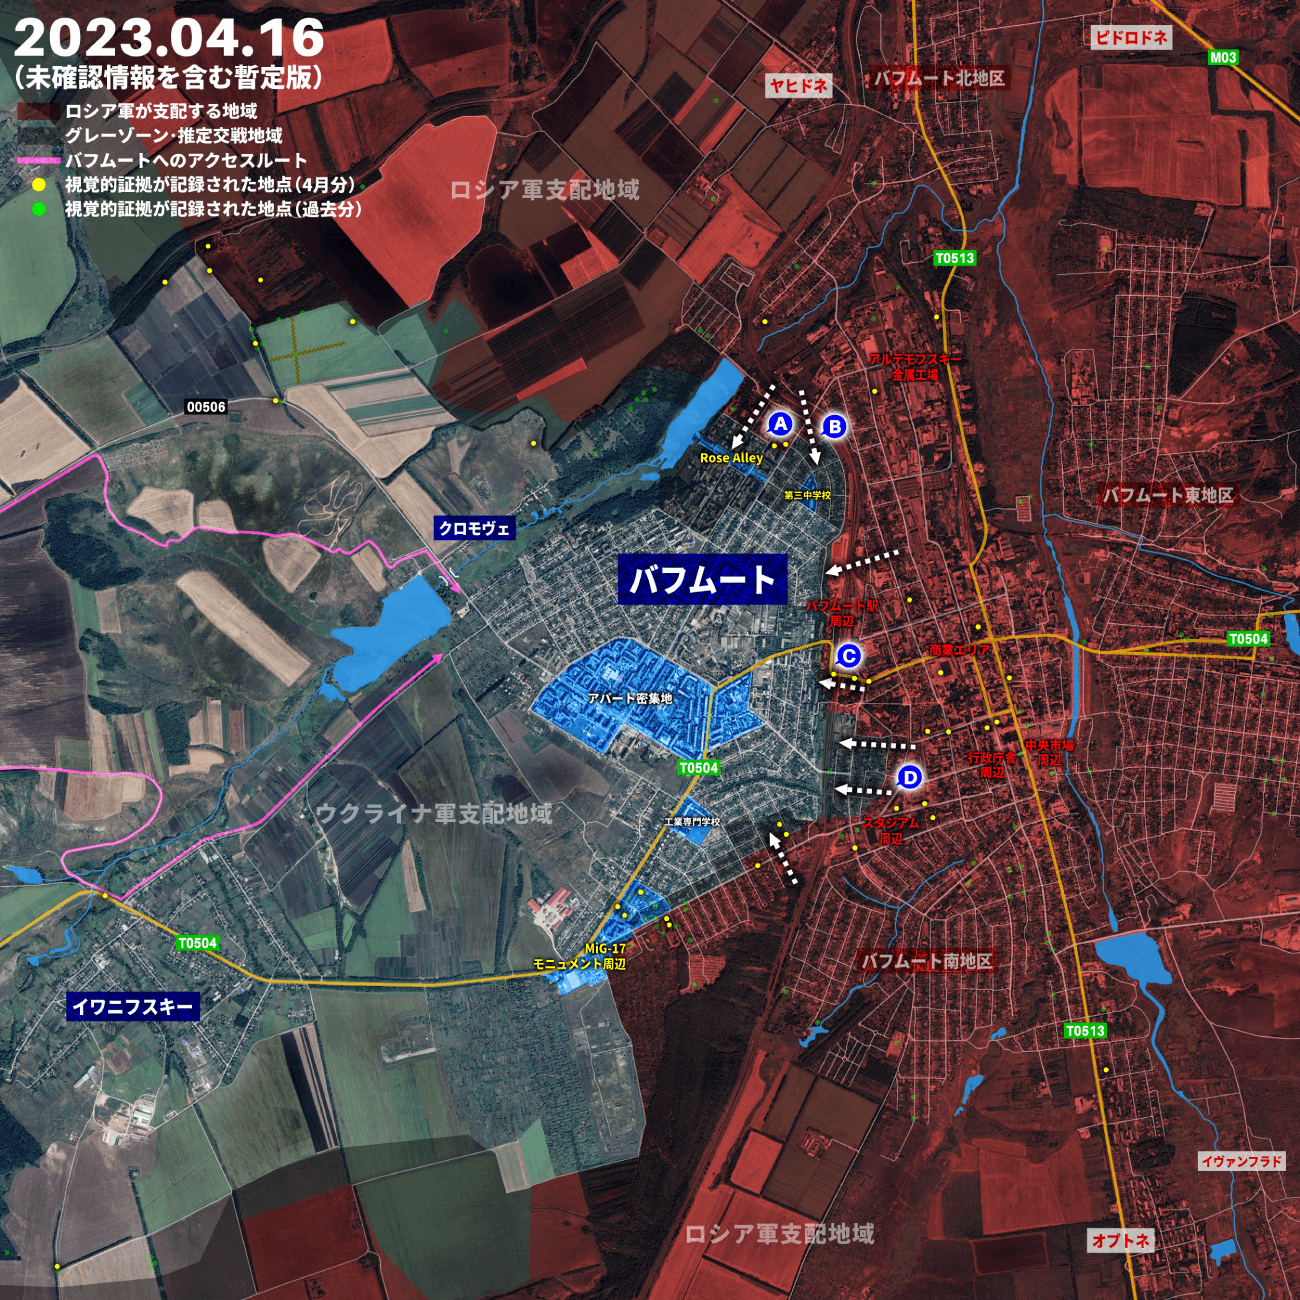 バフムート市内のウクライナ軍後退は鮮明、ロシア軍が駅方面から西部に侵入